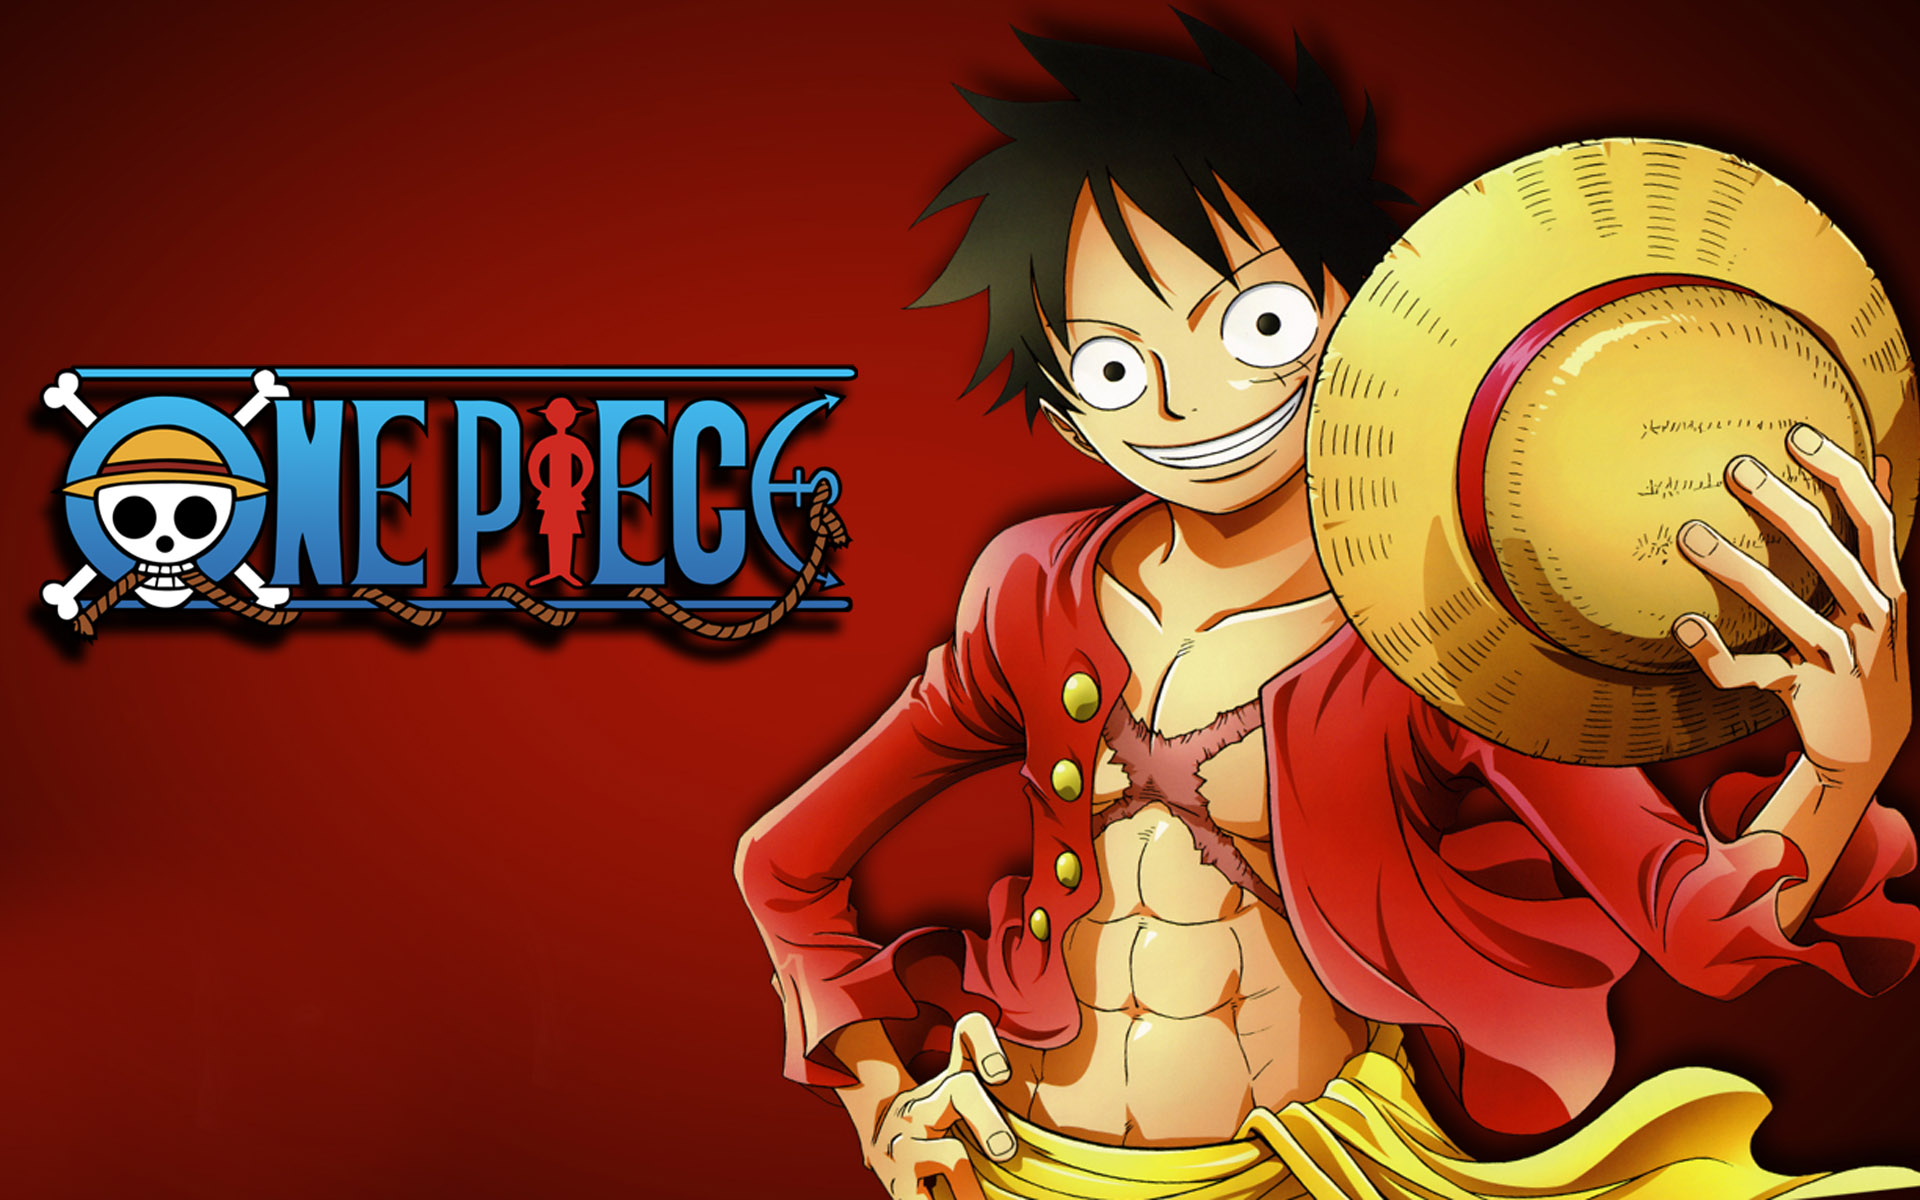 Roger Oden Luffy One Piece: Hành trình tìm kiếm kho báu One Piece không chỉ là của Luffy mà còn của Roger và Oden nữa. Đừng bỏ lỡ cơ hội để tìm hiểu về ba nhân vật này và những trận chiến nảy lửa trong One Piece.